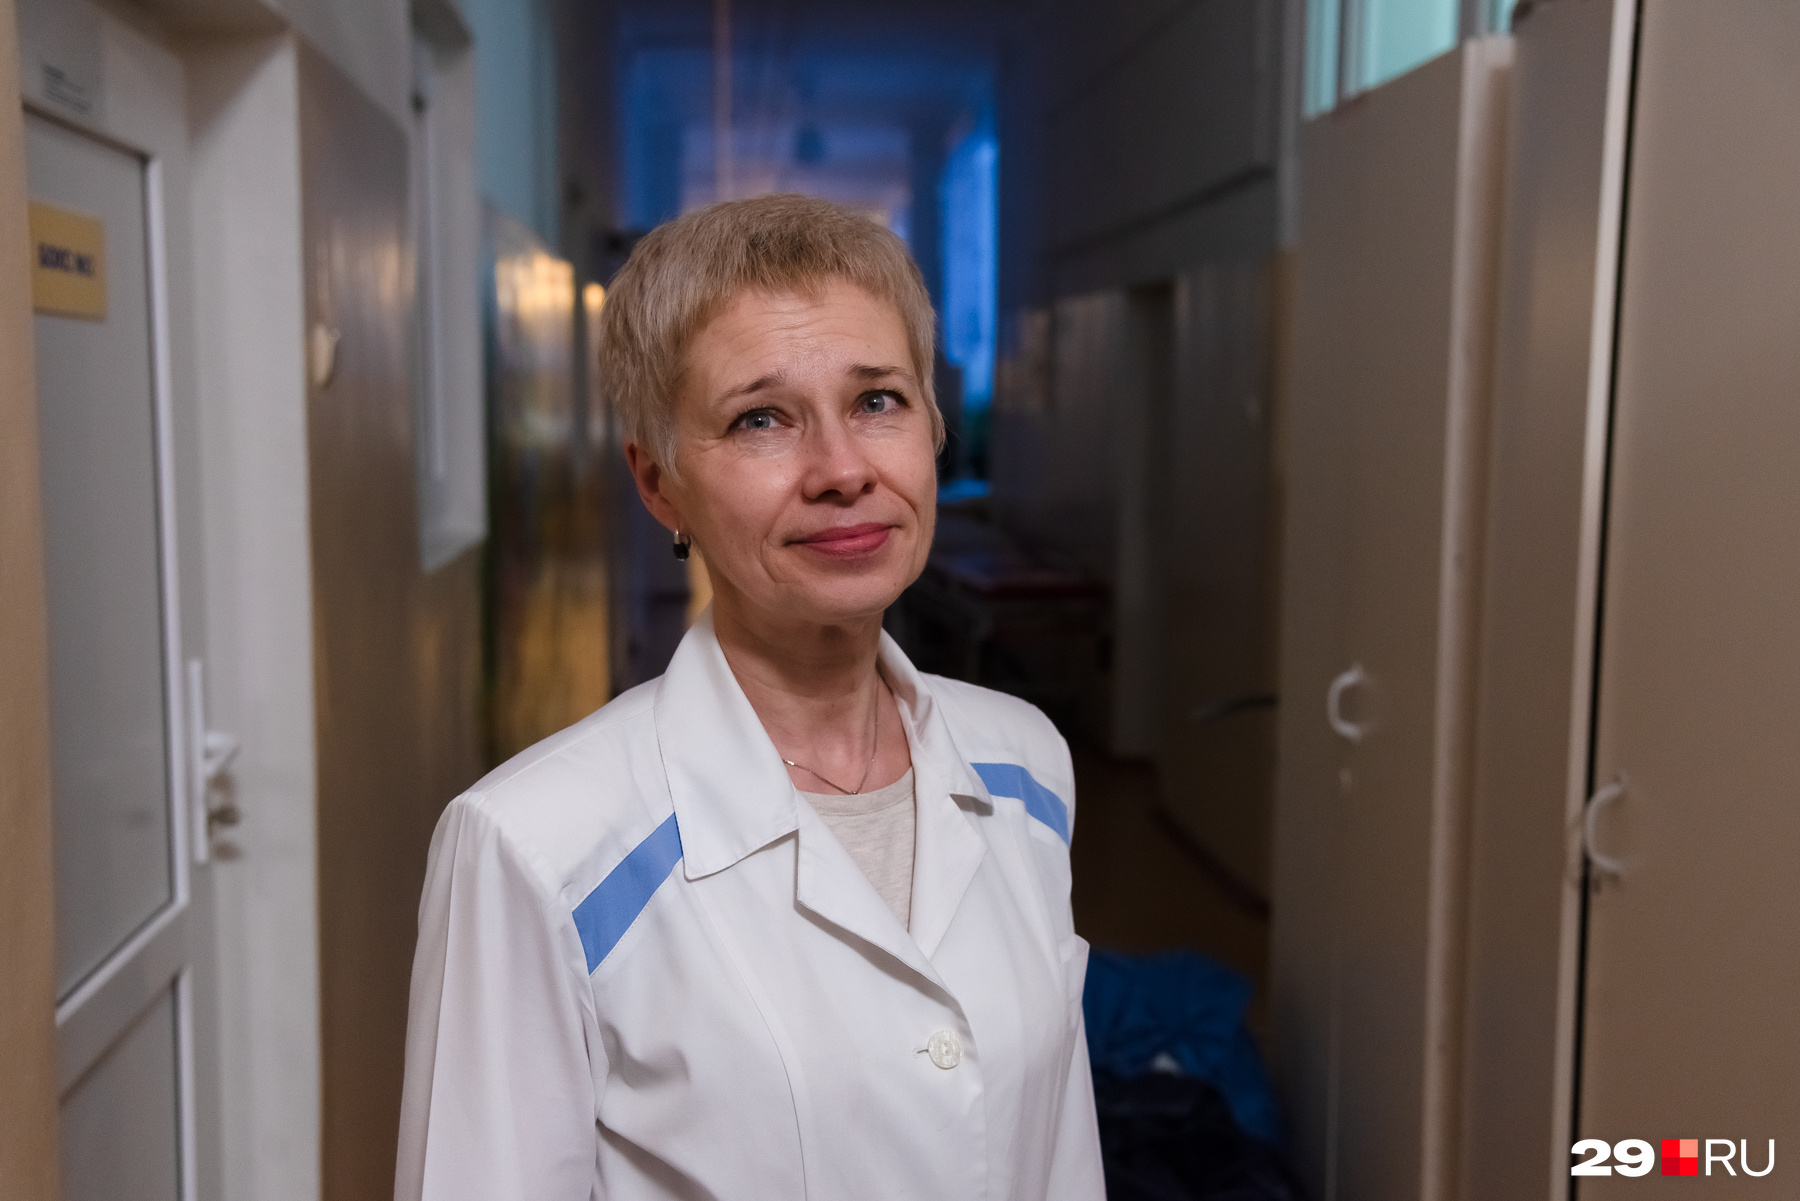 Елена Якушева — заведующая инфекционным отделением в детской больнице